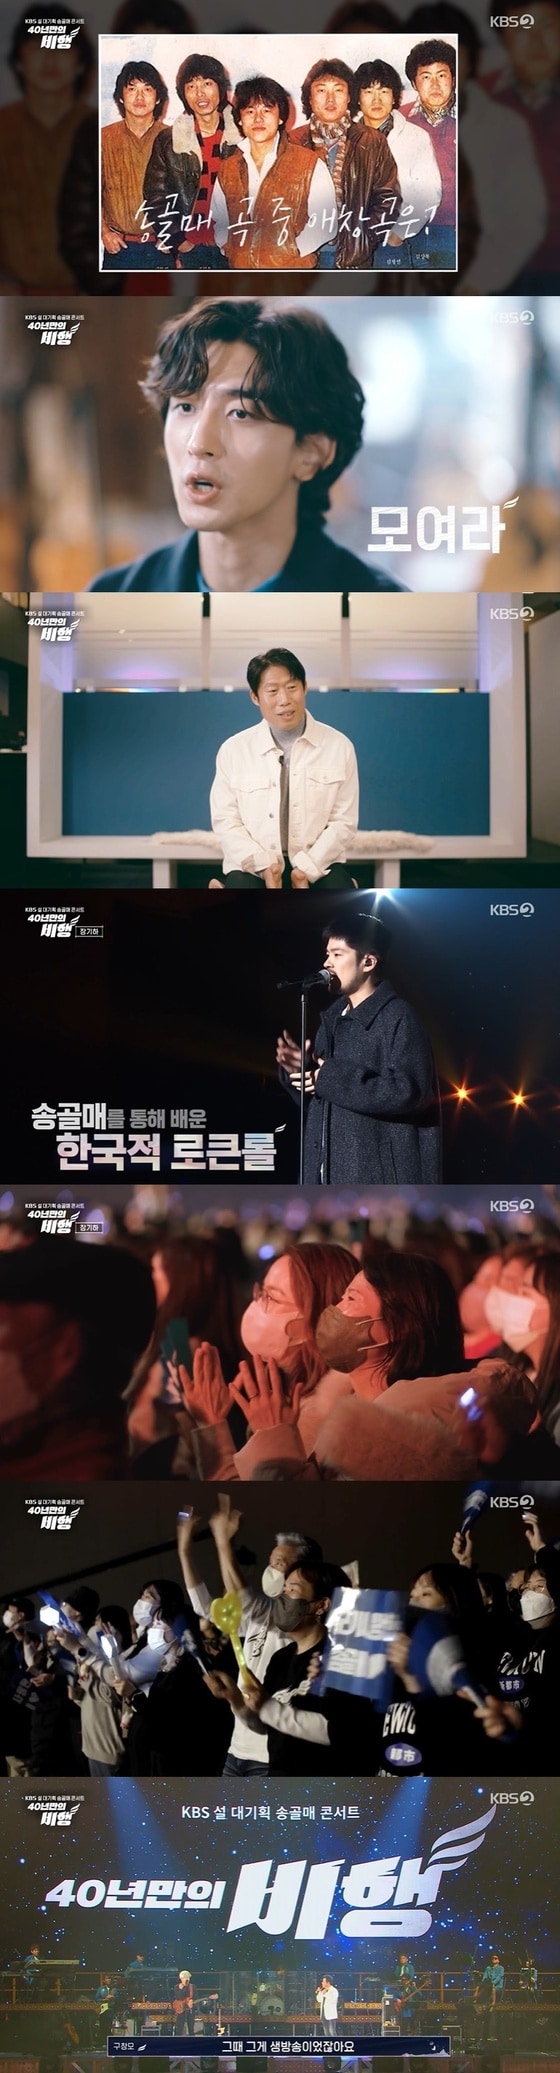 KBS 2TV '송골매 콘서트 40년 만의 비행' 방송 화면 캡처